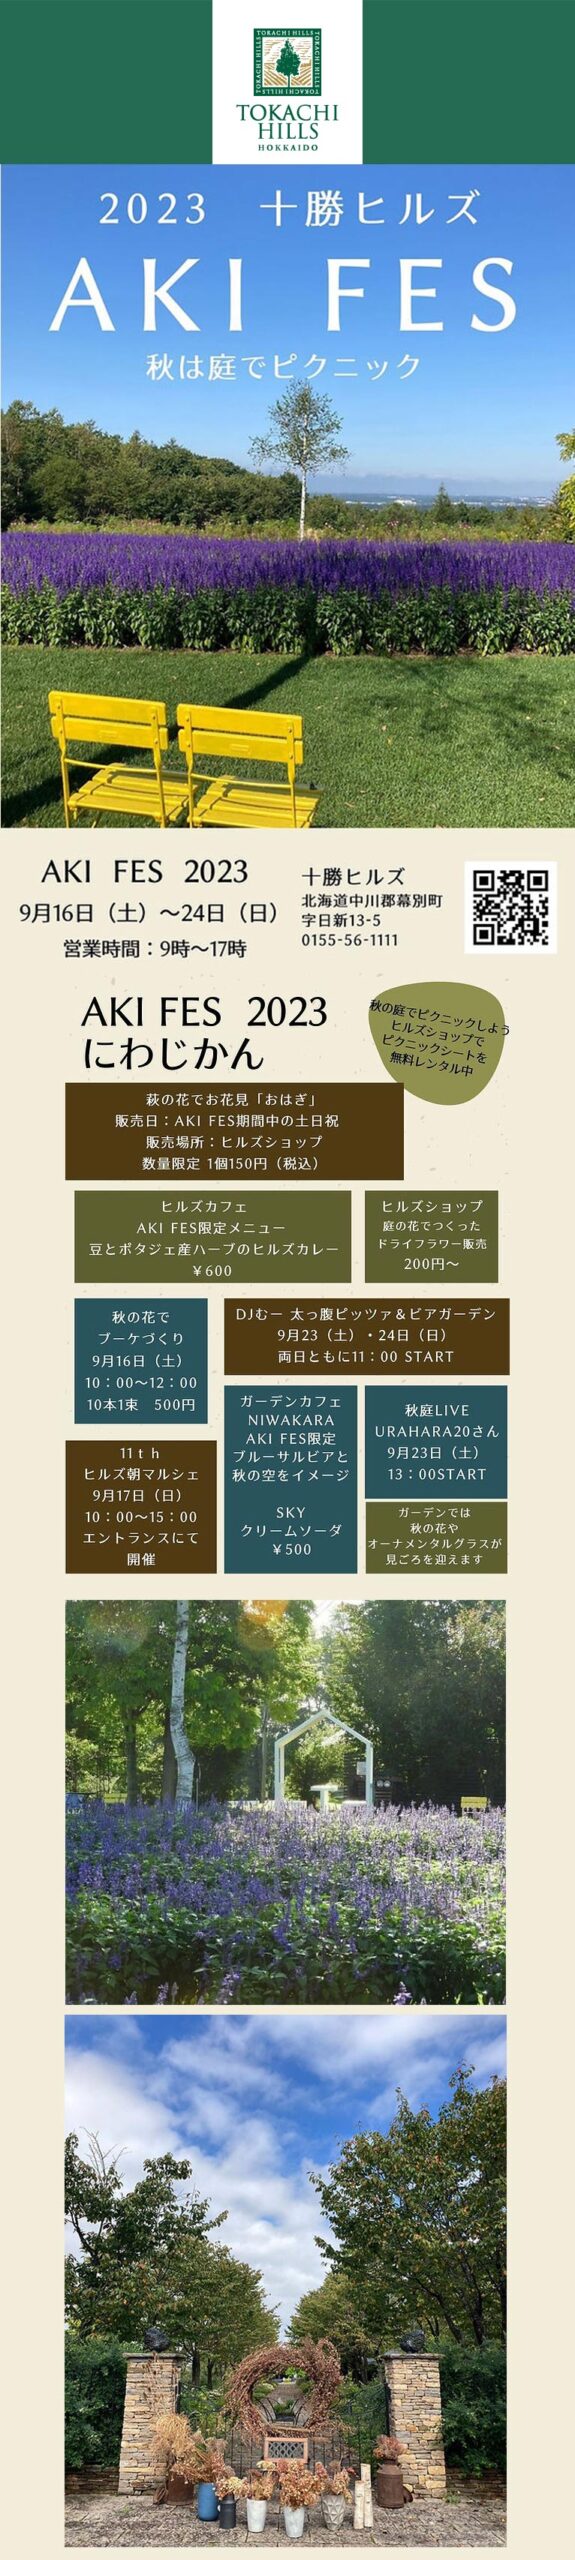 2023年9月16～24日ガーデンイベント『十勝ヒルズのAKI FES』